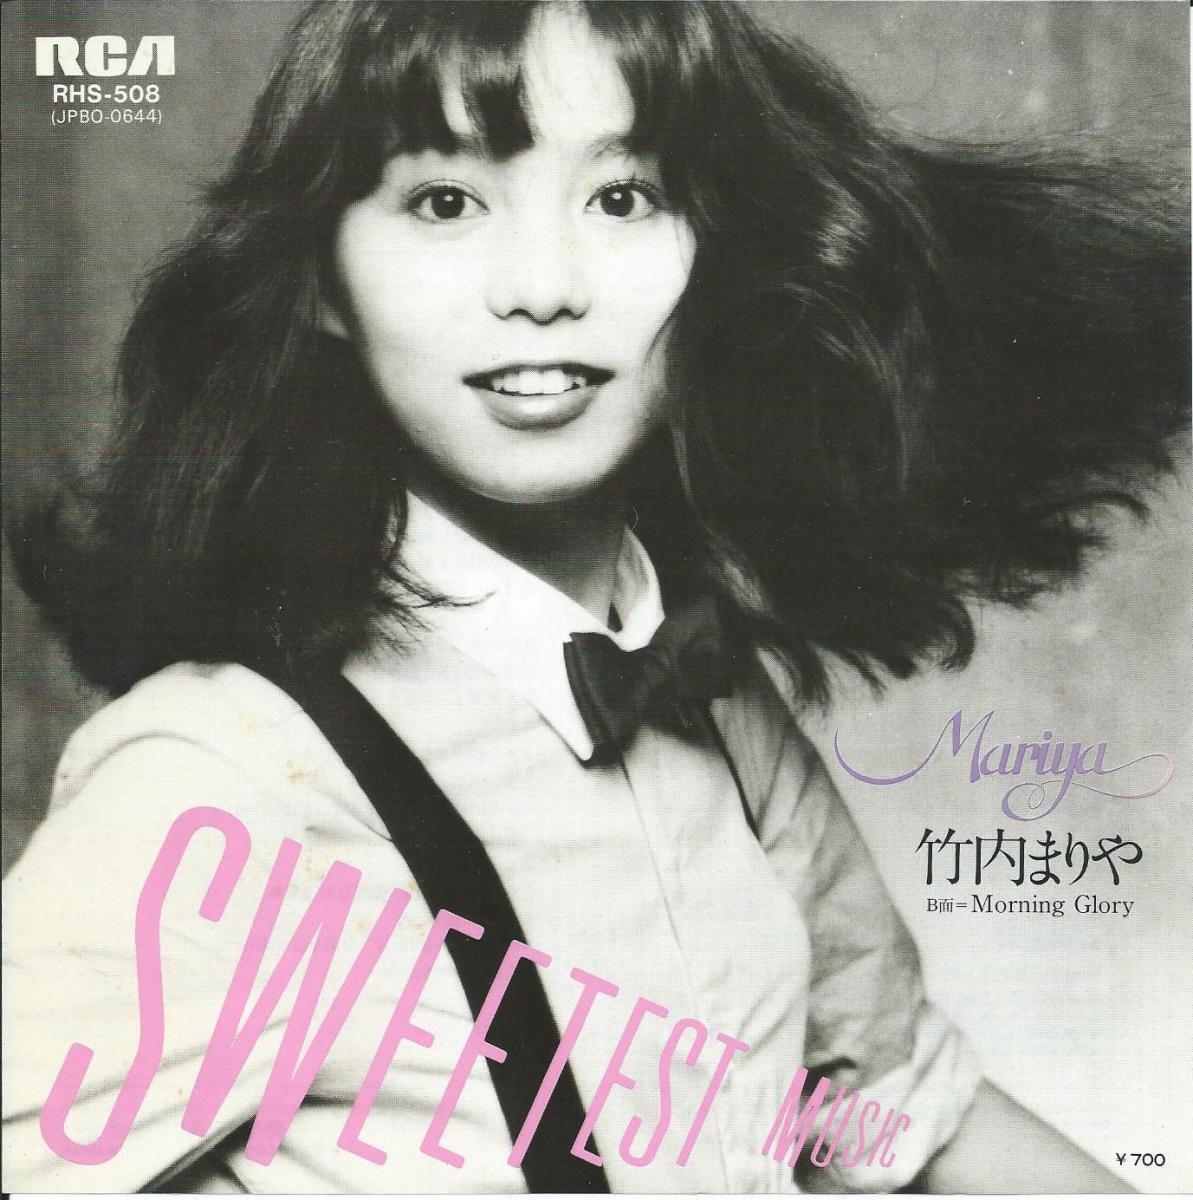 $!Esta es la portada de la recopilación “Sweetest music” y “Morning Glory” publicada en diciembre de 1980 por el sello discográfico RCA. Aunque fue publicado casi cuatro años antes de Variety, internet hizo que esta imagen se volviera viral con la locura de Plastic Love.